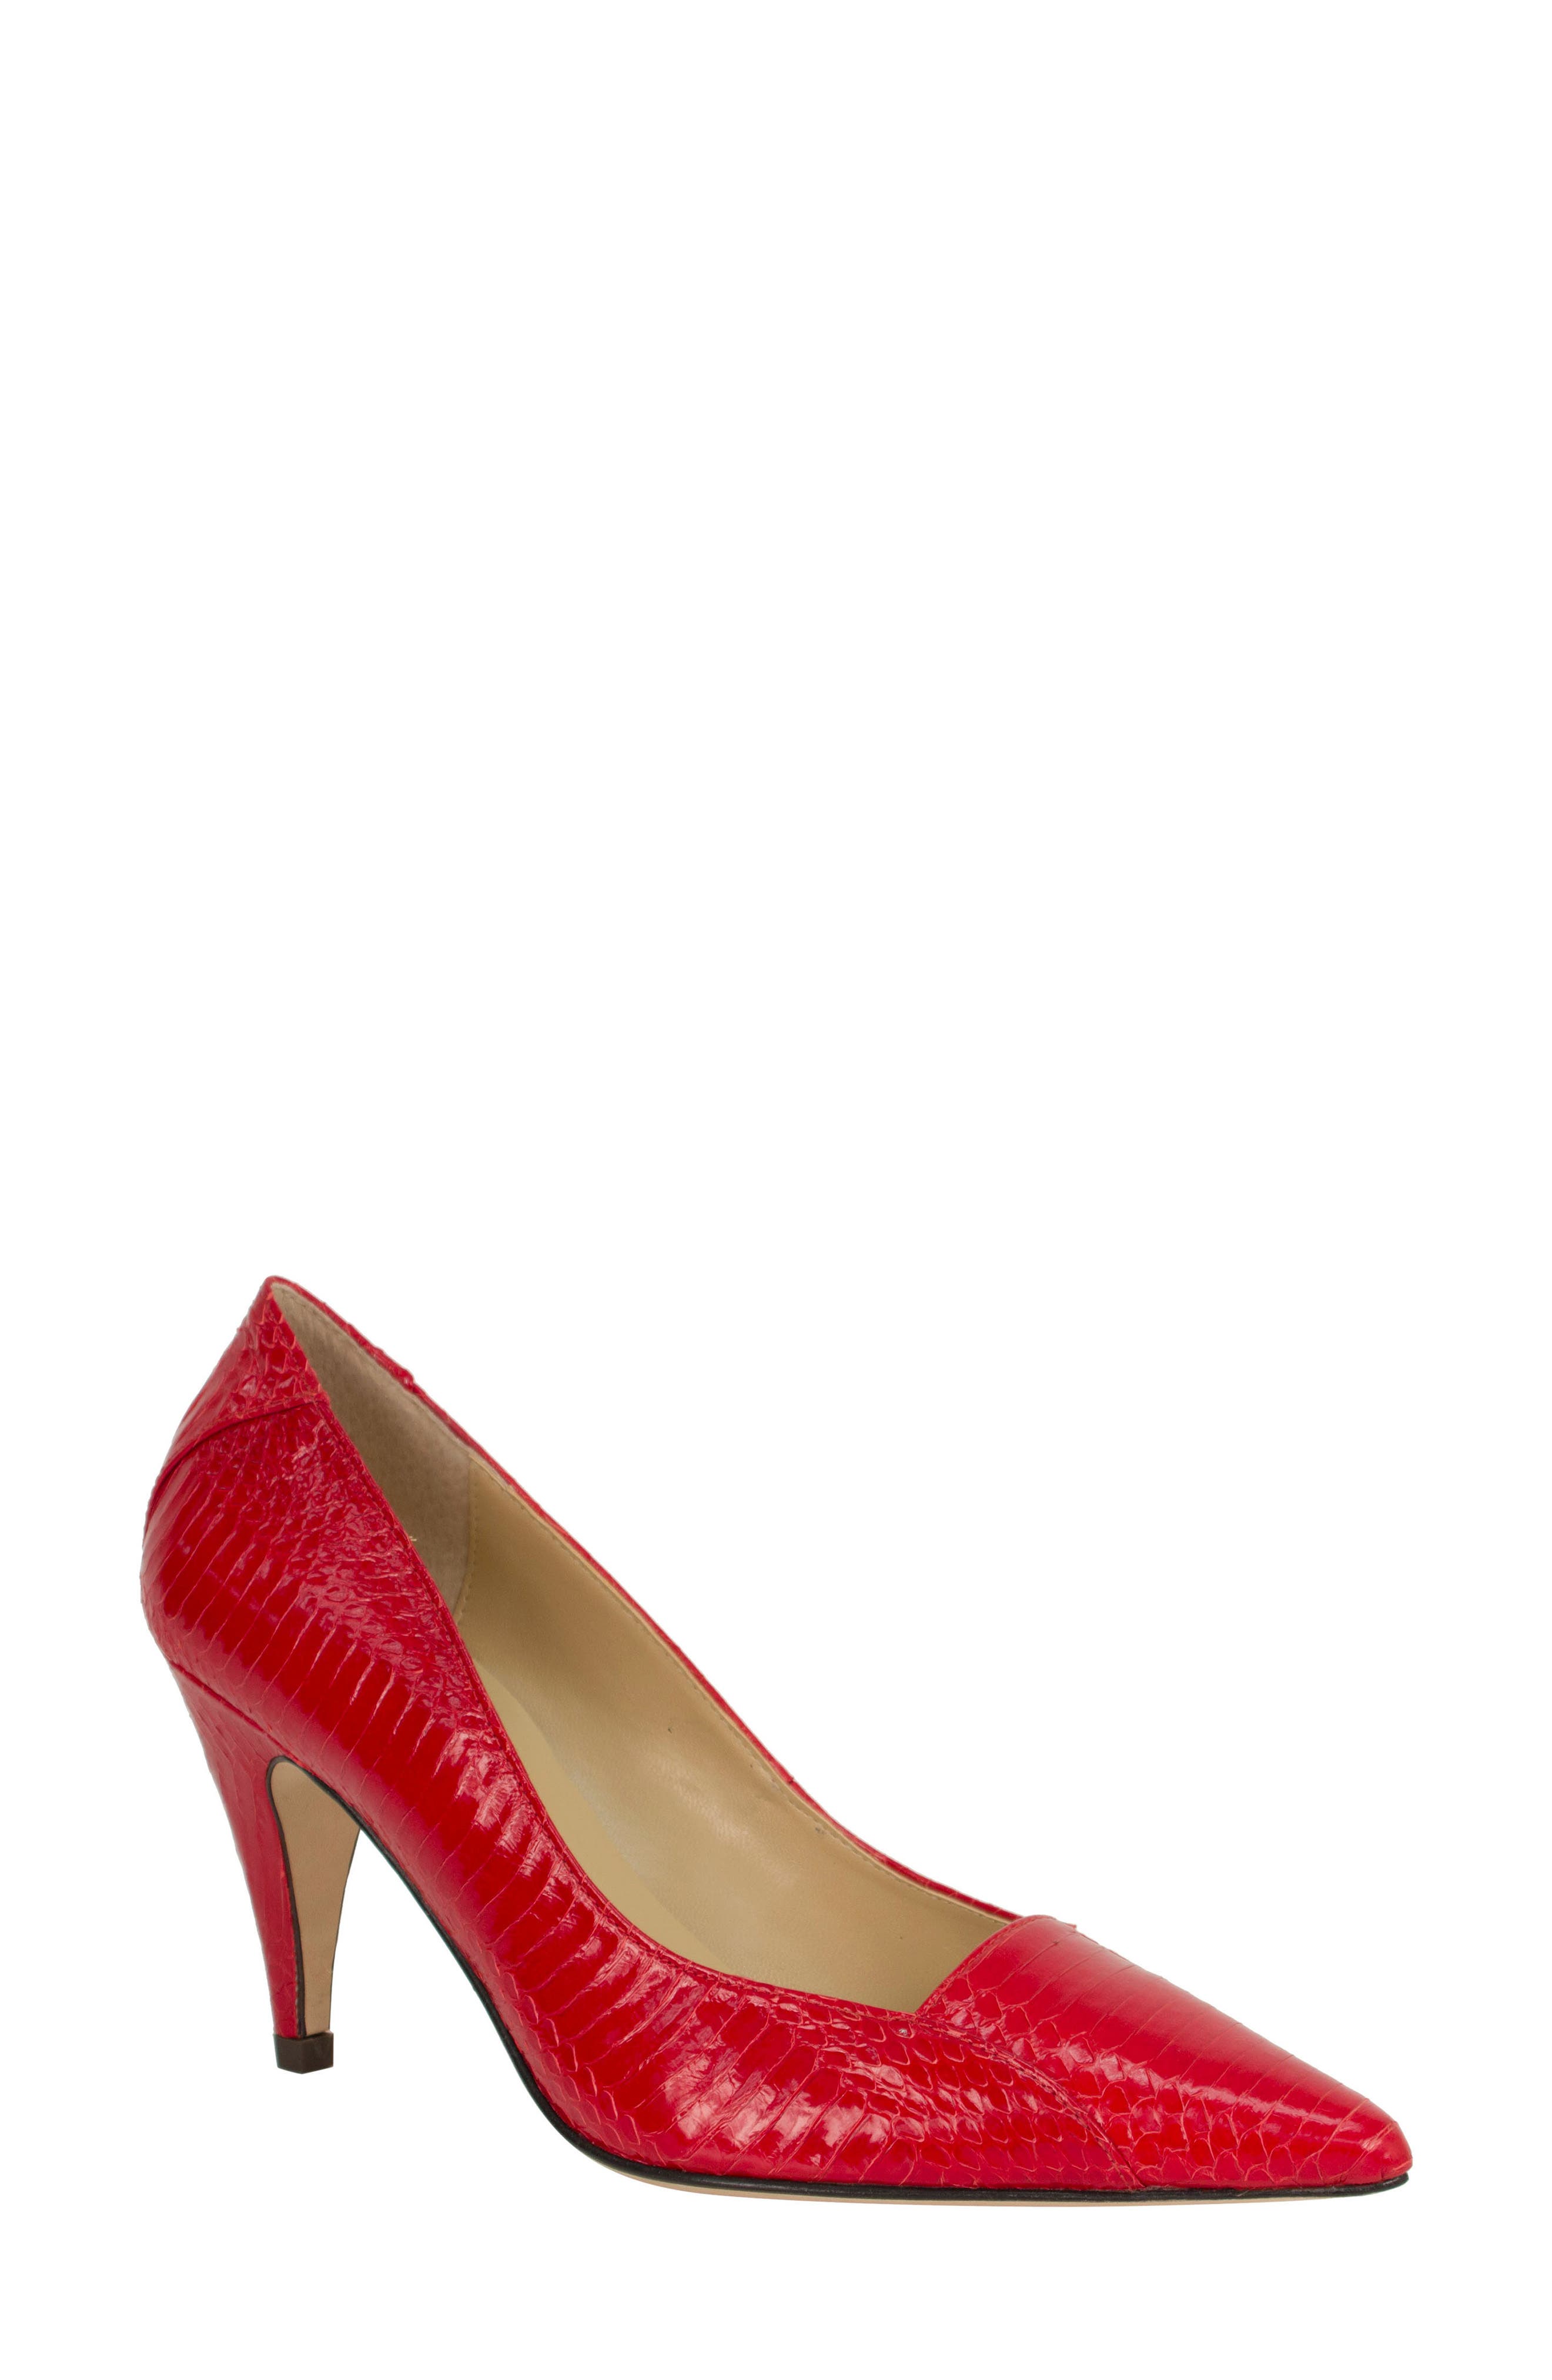 nordstrom red heels